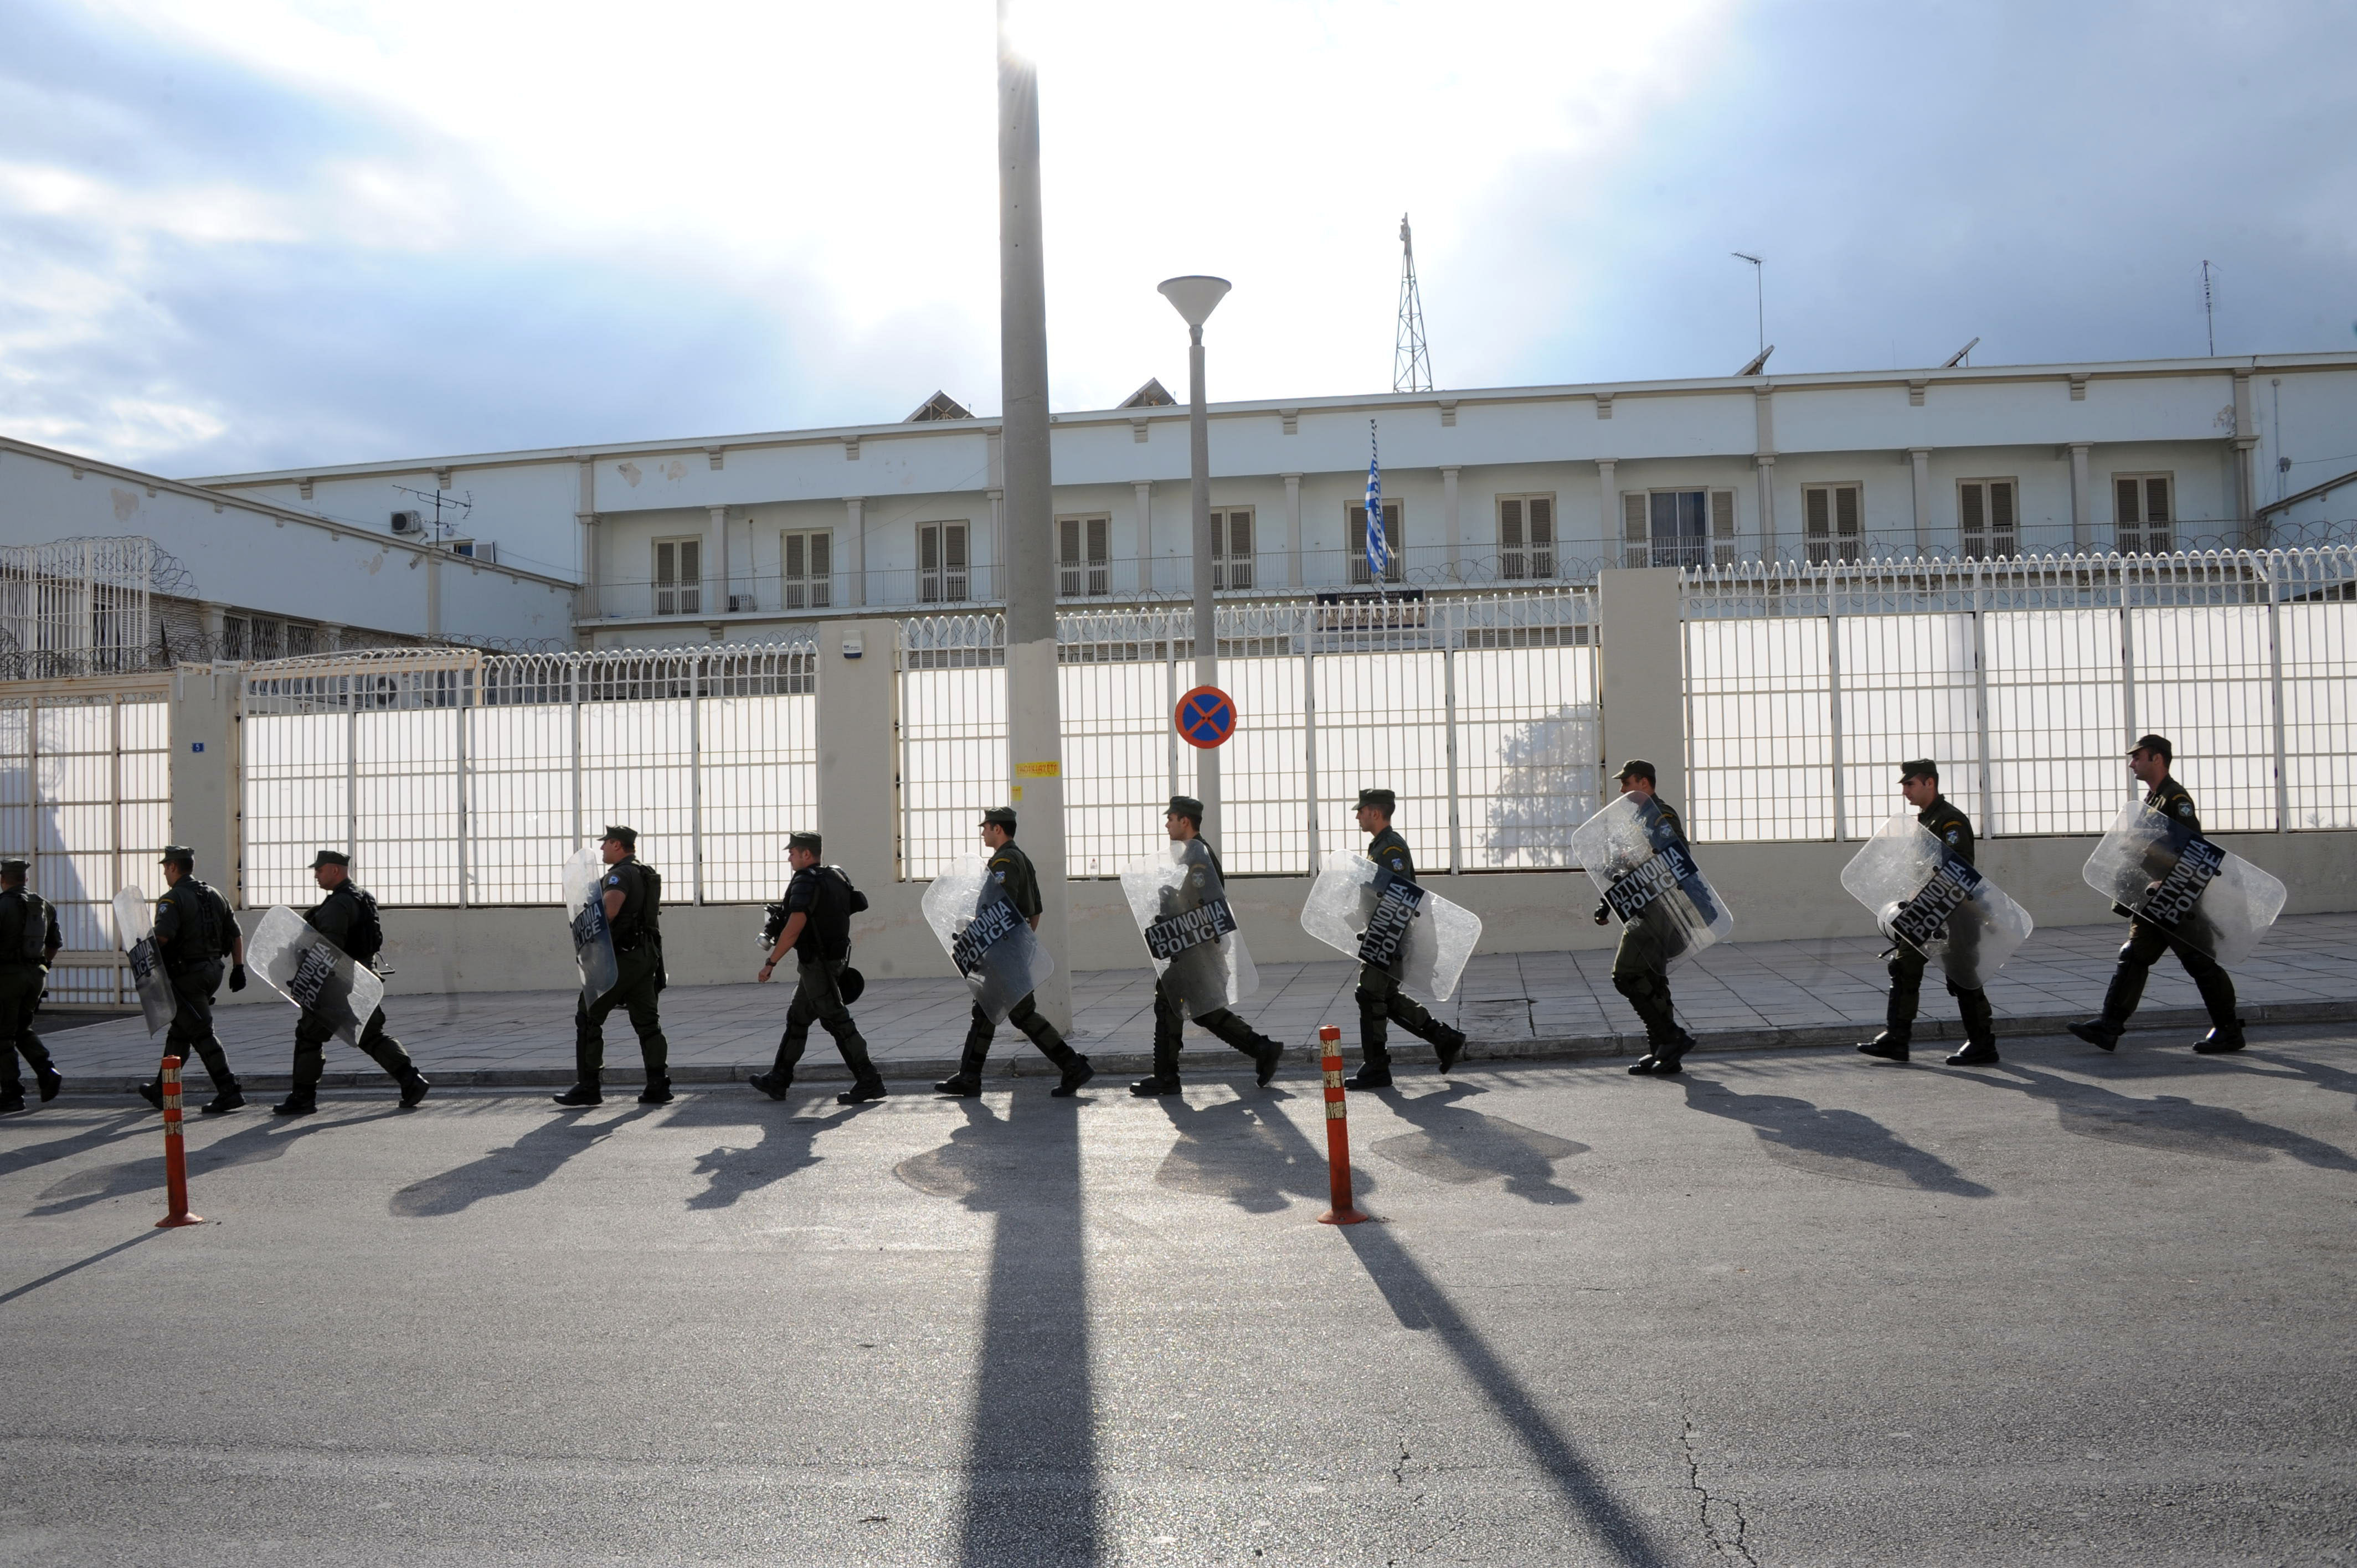 Xιλιάδες τα οφειλόμενα ρεπό στους εξωτερικούς φρουρούς Κορυδαλλού | tovima.gr